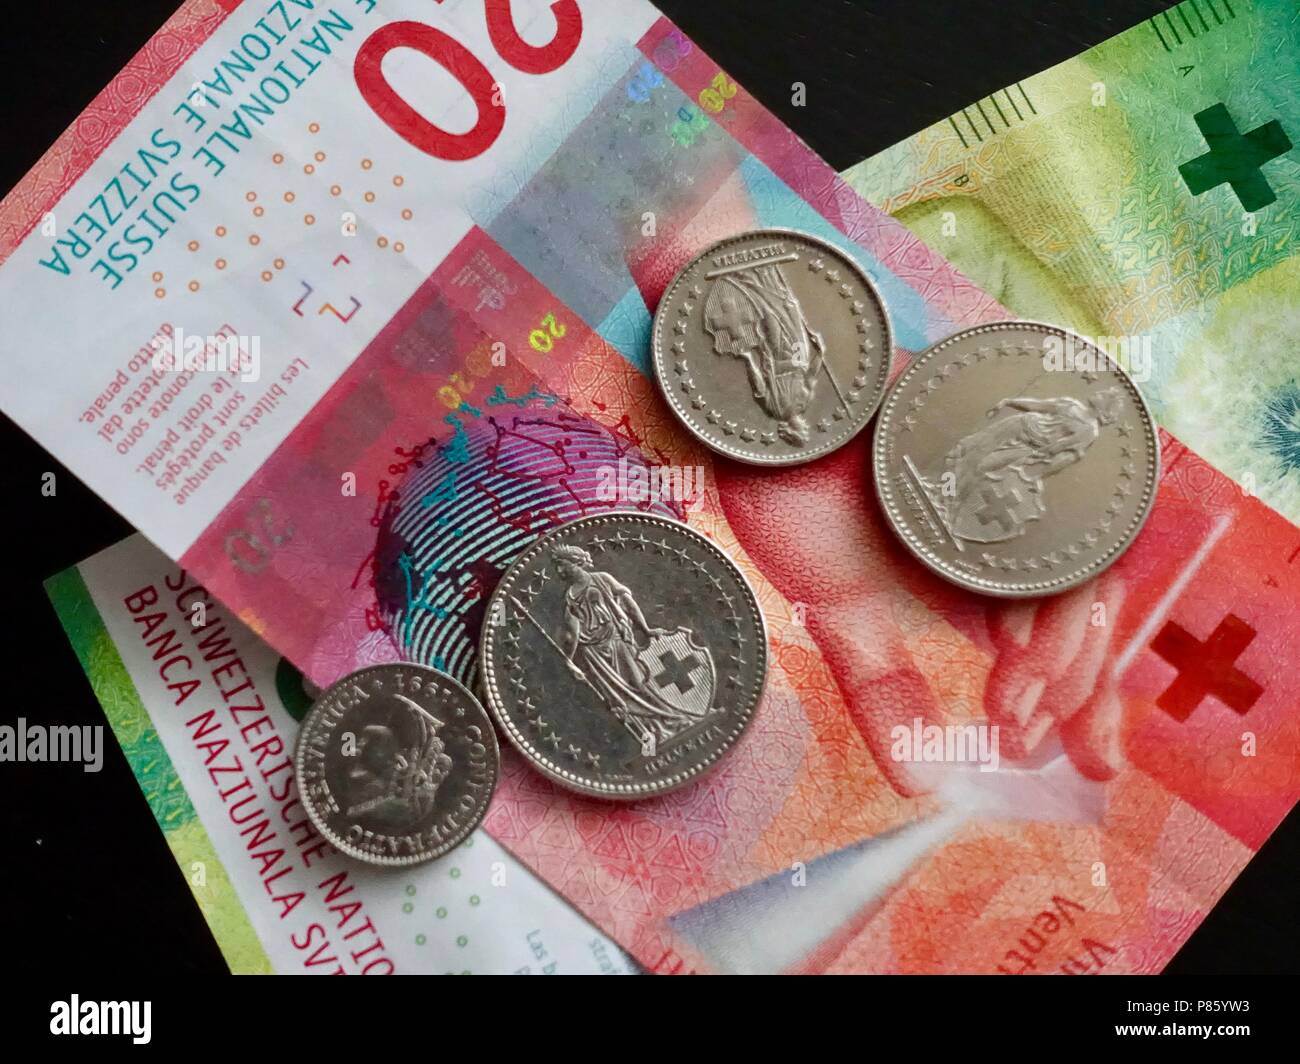 Schweizer Münzen und Geldscheine auf dunklem Hintergrund. Währung in der  Schweiz und Liechtenstein verwendet Stockfotografie - Alamy